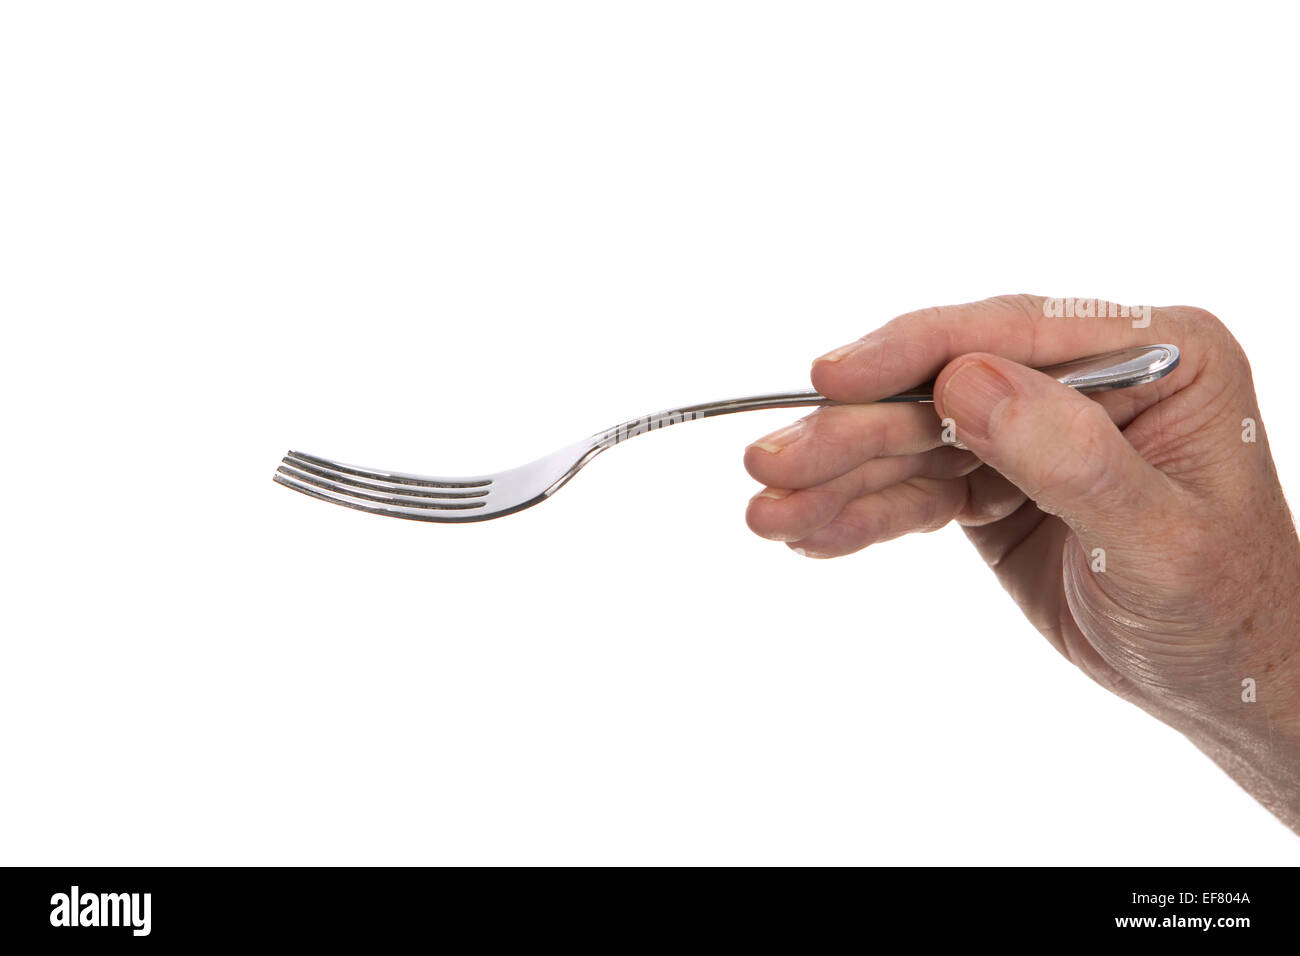 La main de l'homme prêt à manger est tenant une fourchette à dîner en acier inoxydable. Banque D'Images